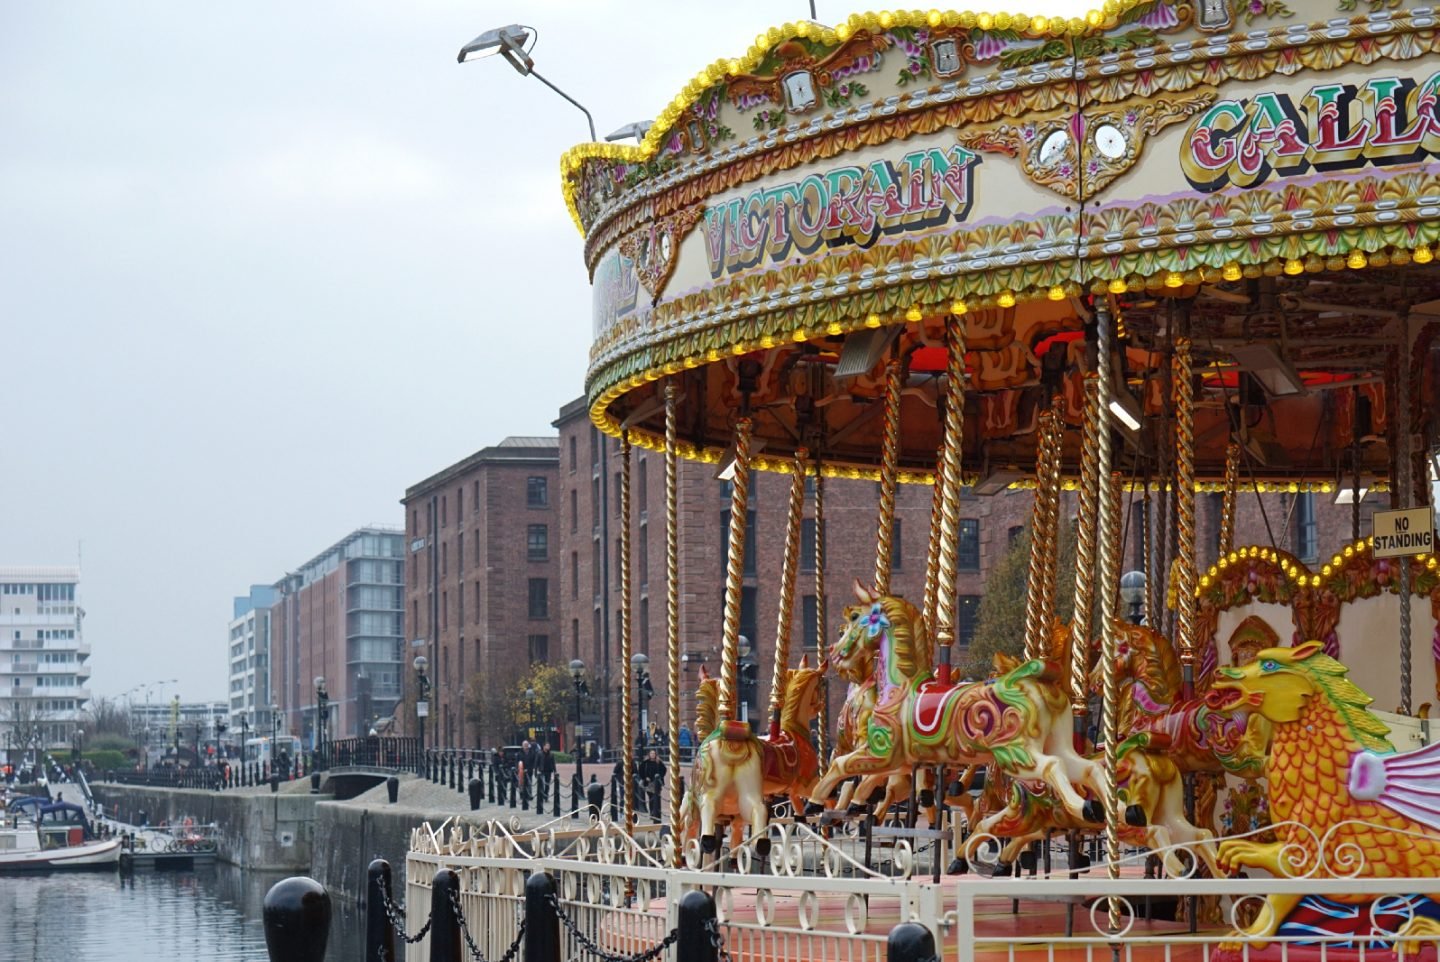 Carousel at Albert Docks Liverpool